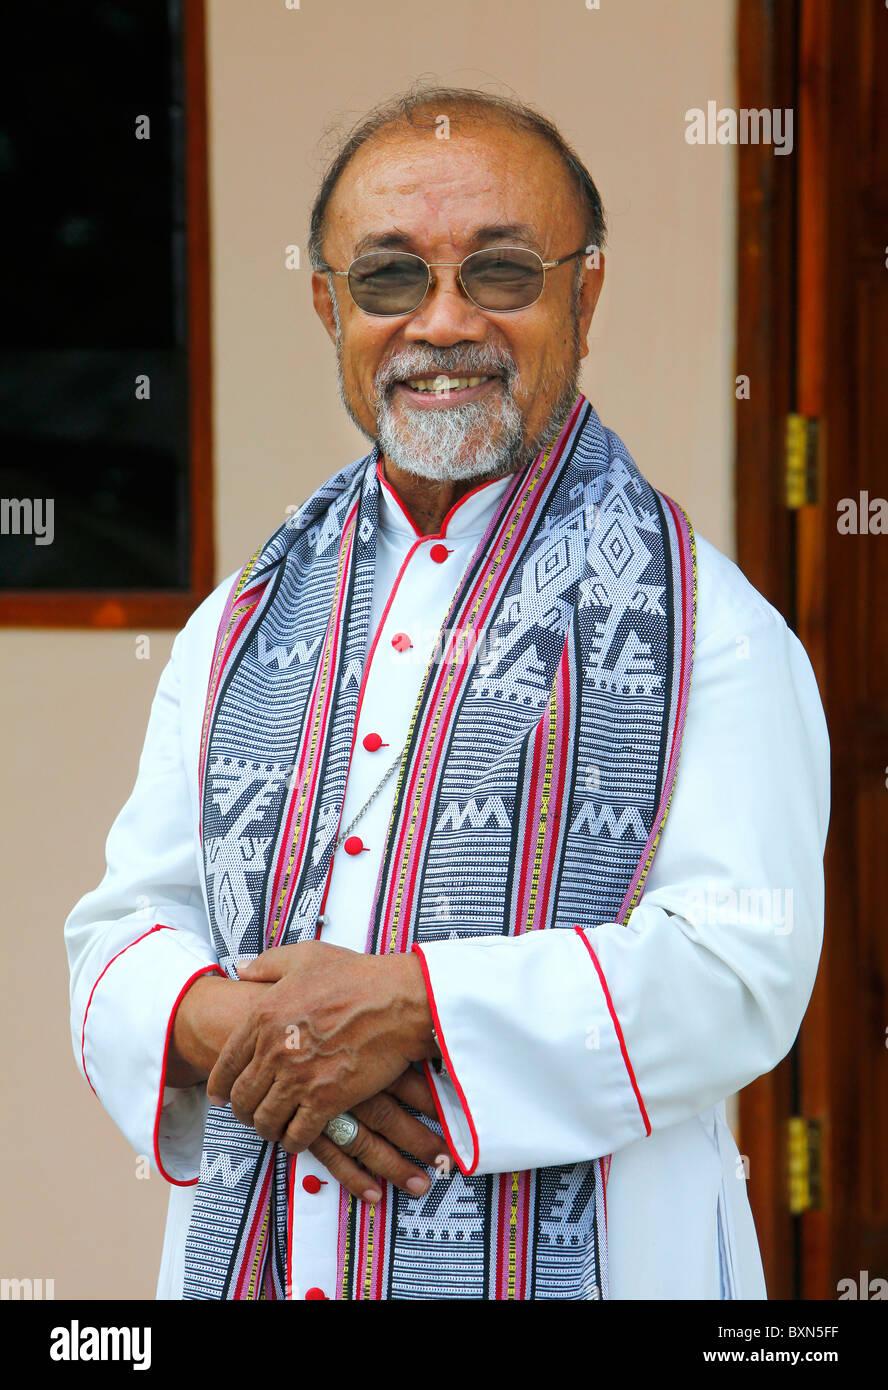 roman catholic Bishop Dom Ricardo Da Silva, Dili, Timor Leste (East Timor) Stock Photo